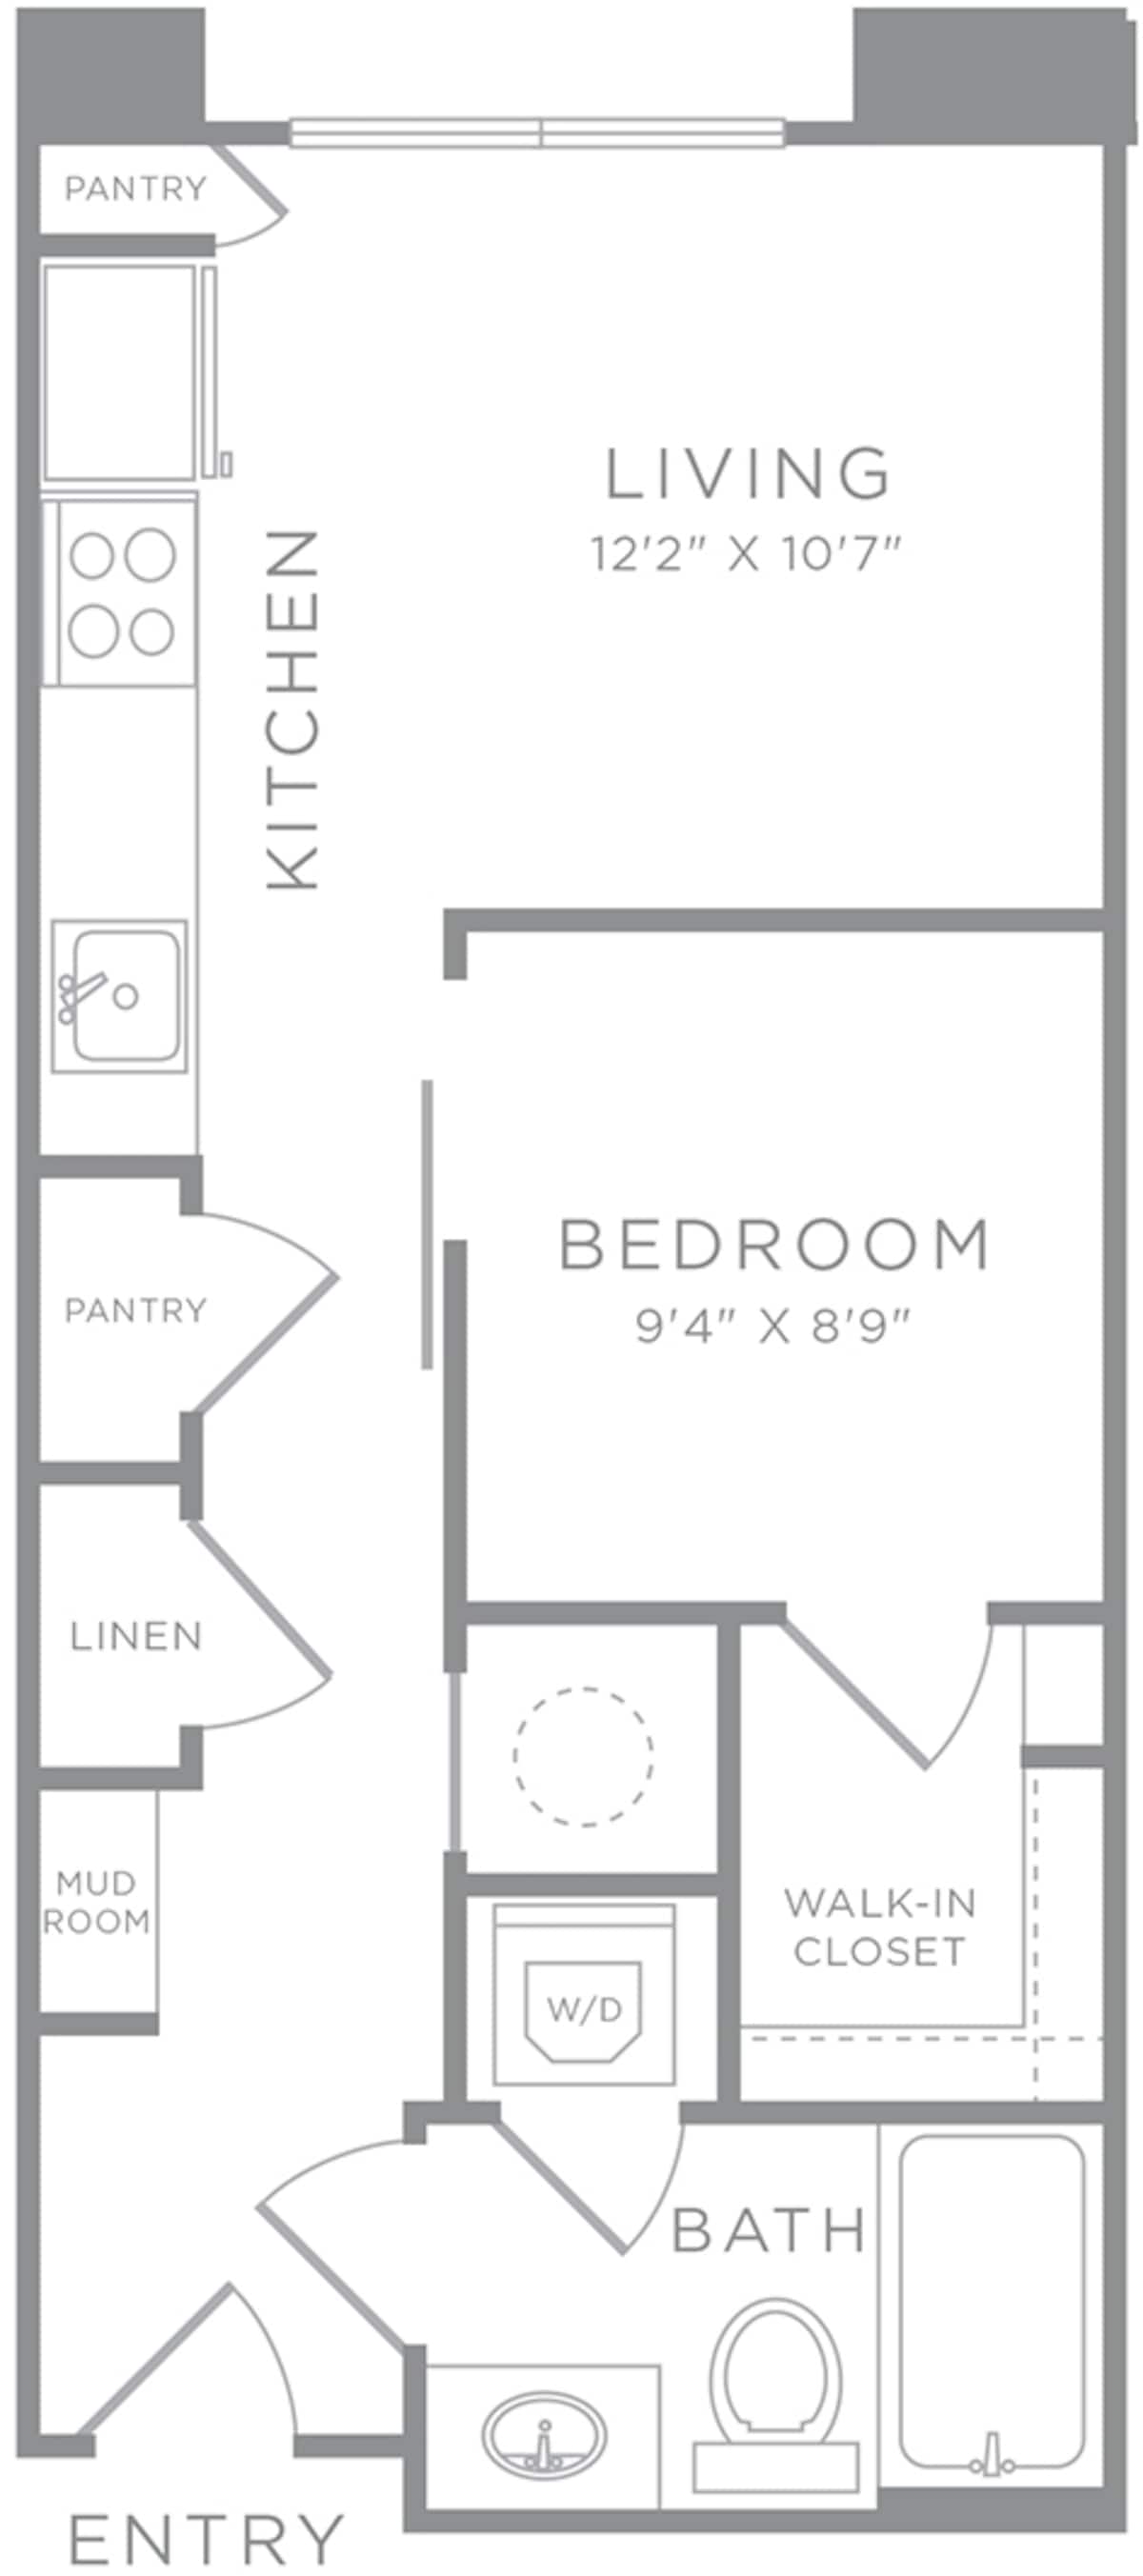 Floorplan diagram for S1, showing 1 bedroom